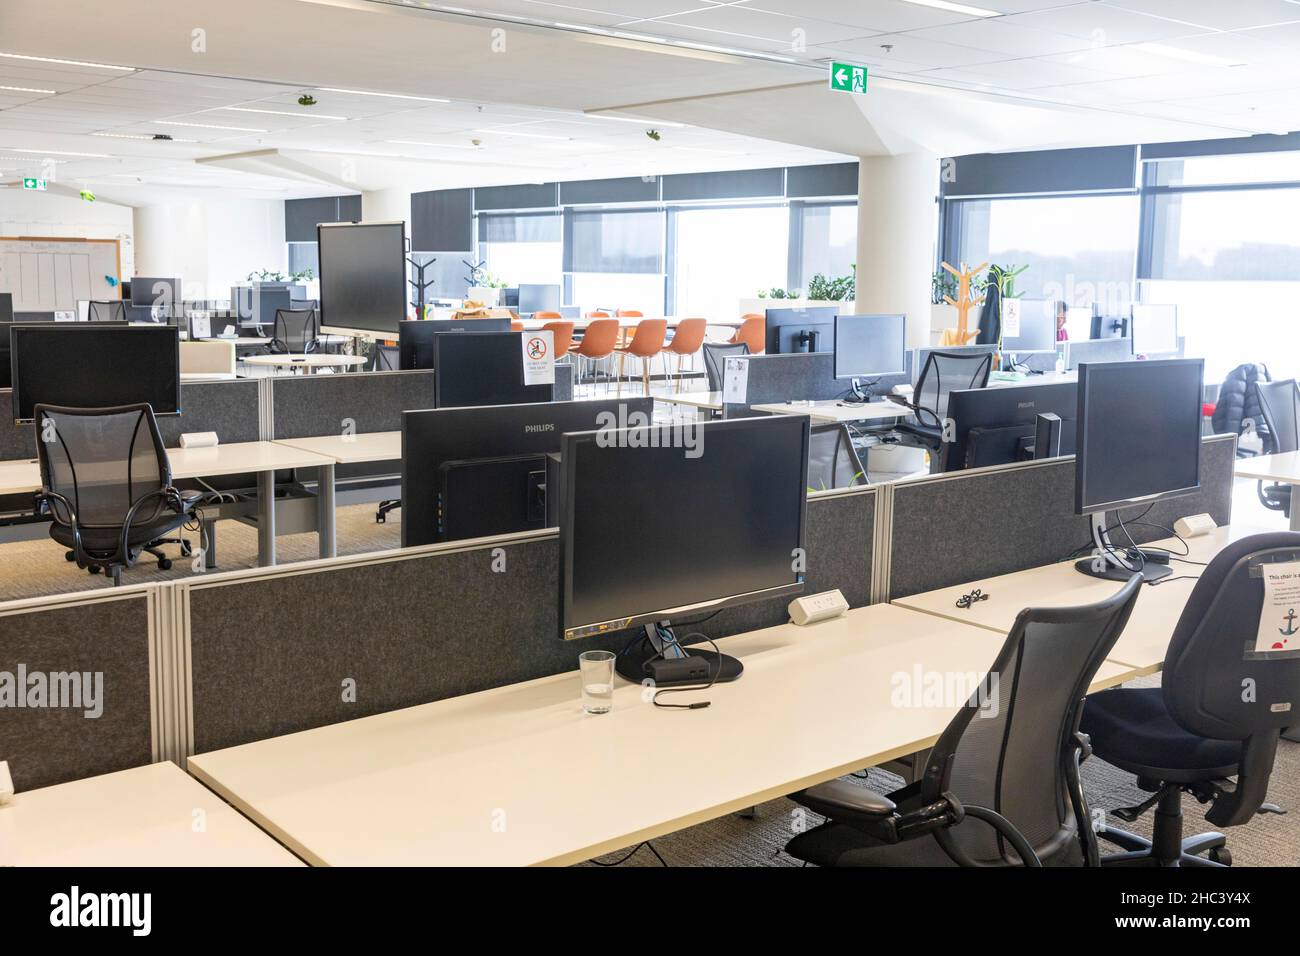 Covid 19 impact, bureaux d'entreprise vides comme le personnel a dit de travailler à domicile pendant une pandémie, bâtiment de bureaux de Sydney, Australie Banque D'Images